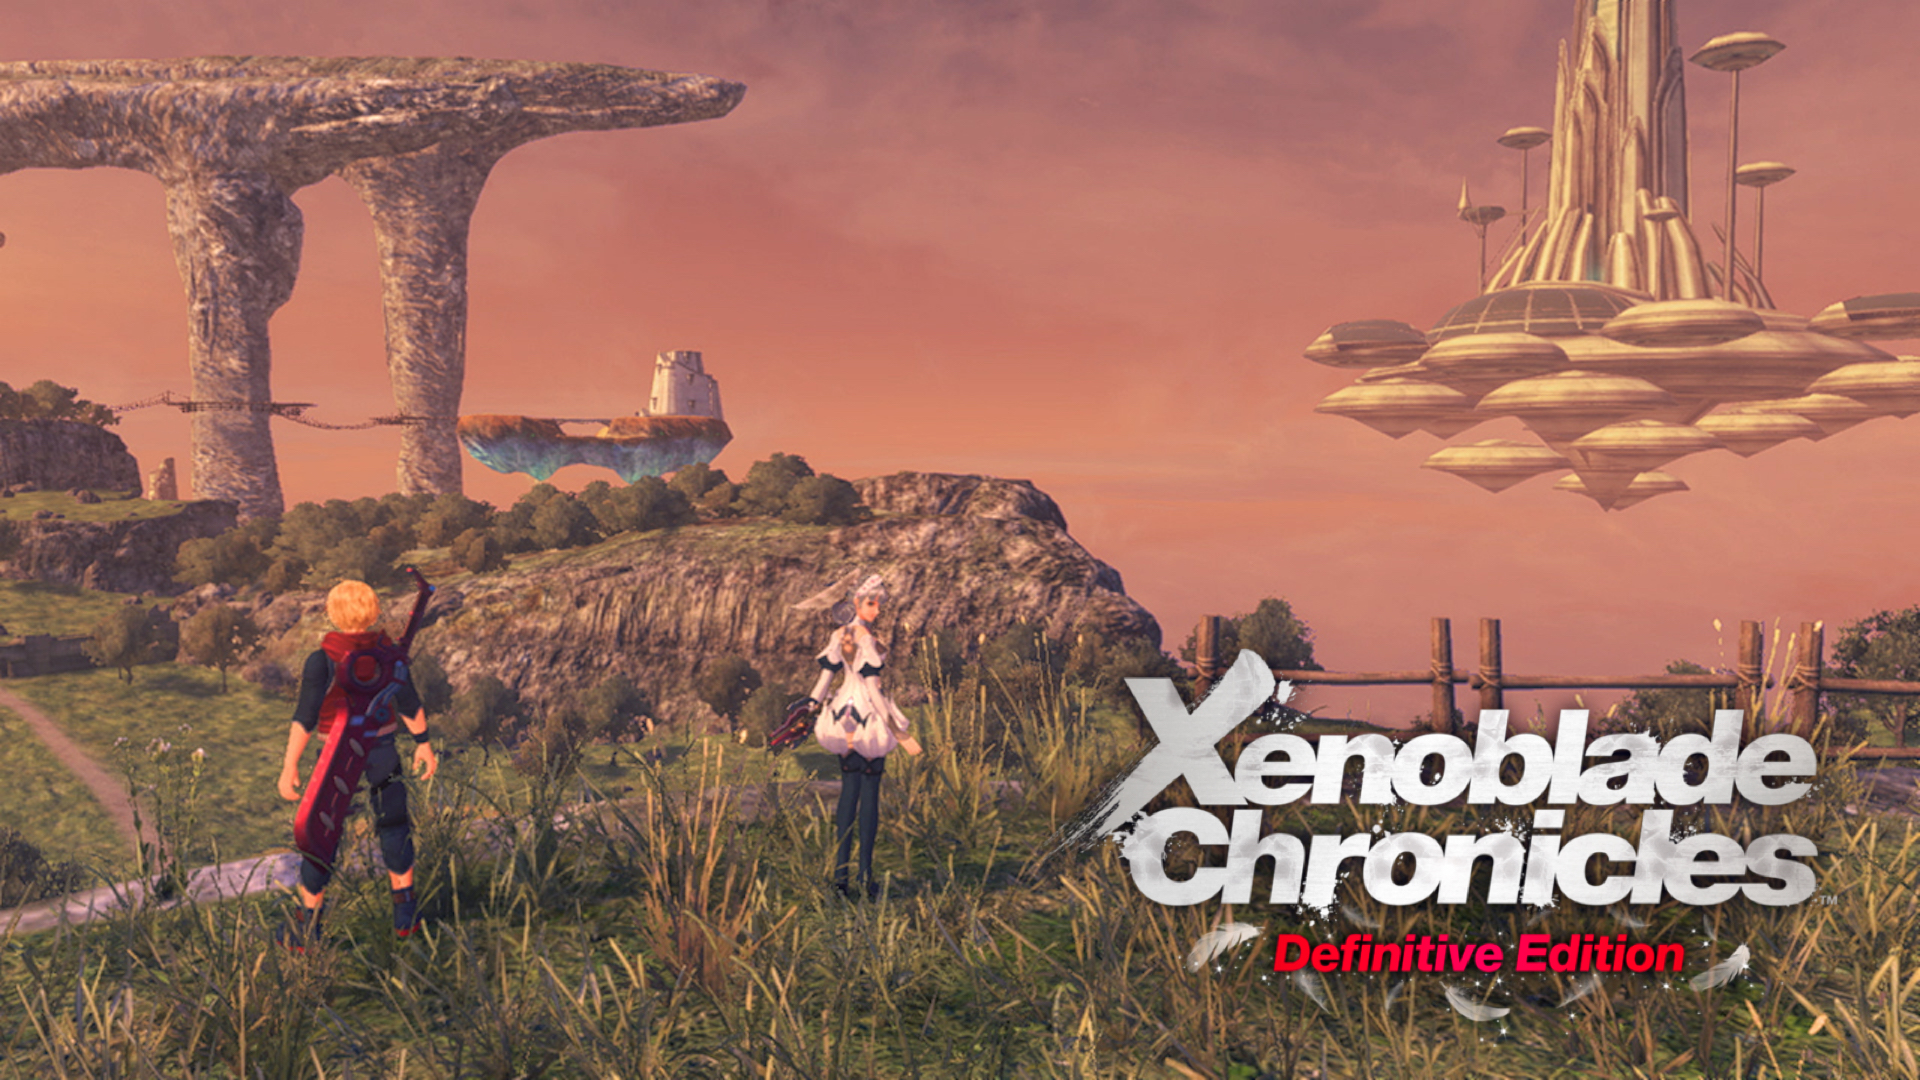 Xenoblade nintendo switch. Xenoblade Chronicles Definitive Edition. Xenoblade Chronicles Definitive Edition Nintendo Switch. Xenoblade Chronicles Nintendo Switch. Xenoblade Chronicles игра.